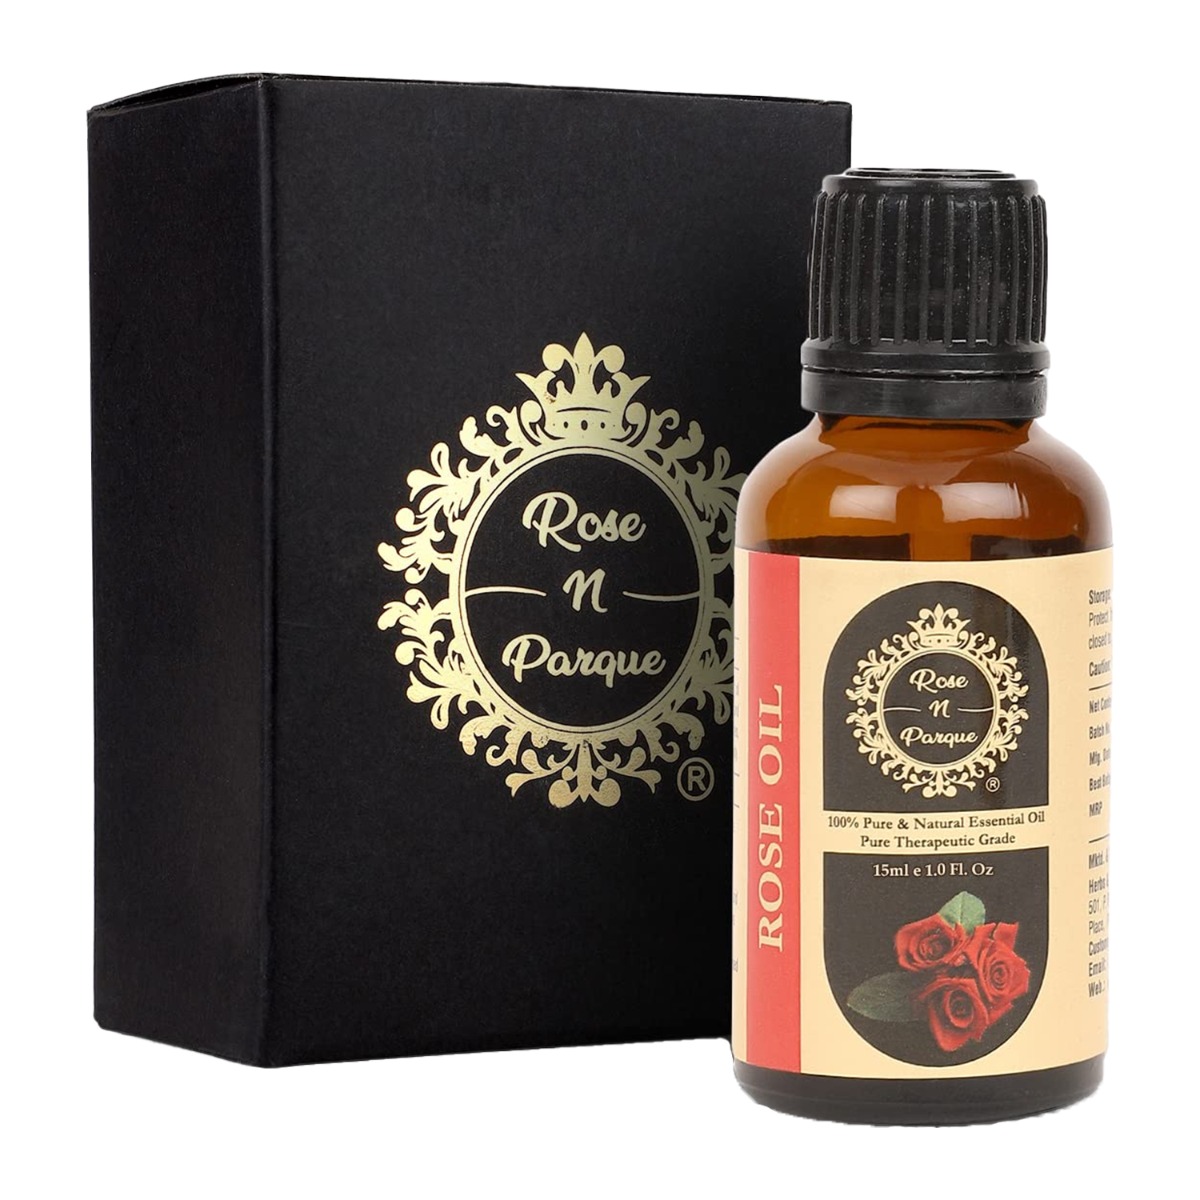 RosenParque 100% Pure & Natural Rose Essential Oil, 15ml